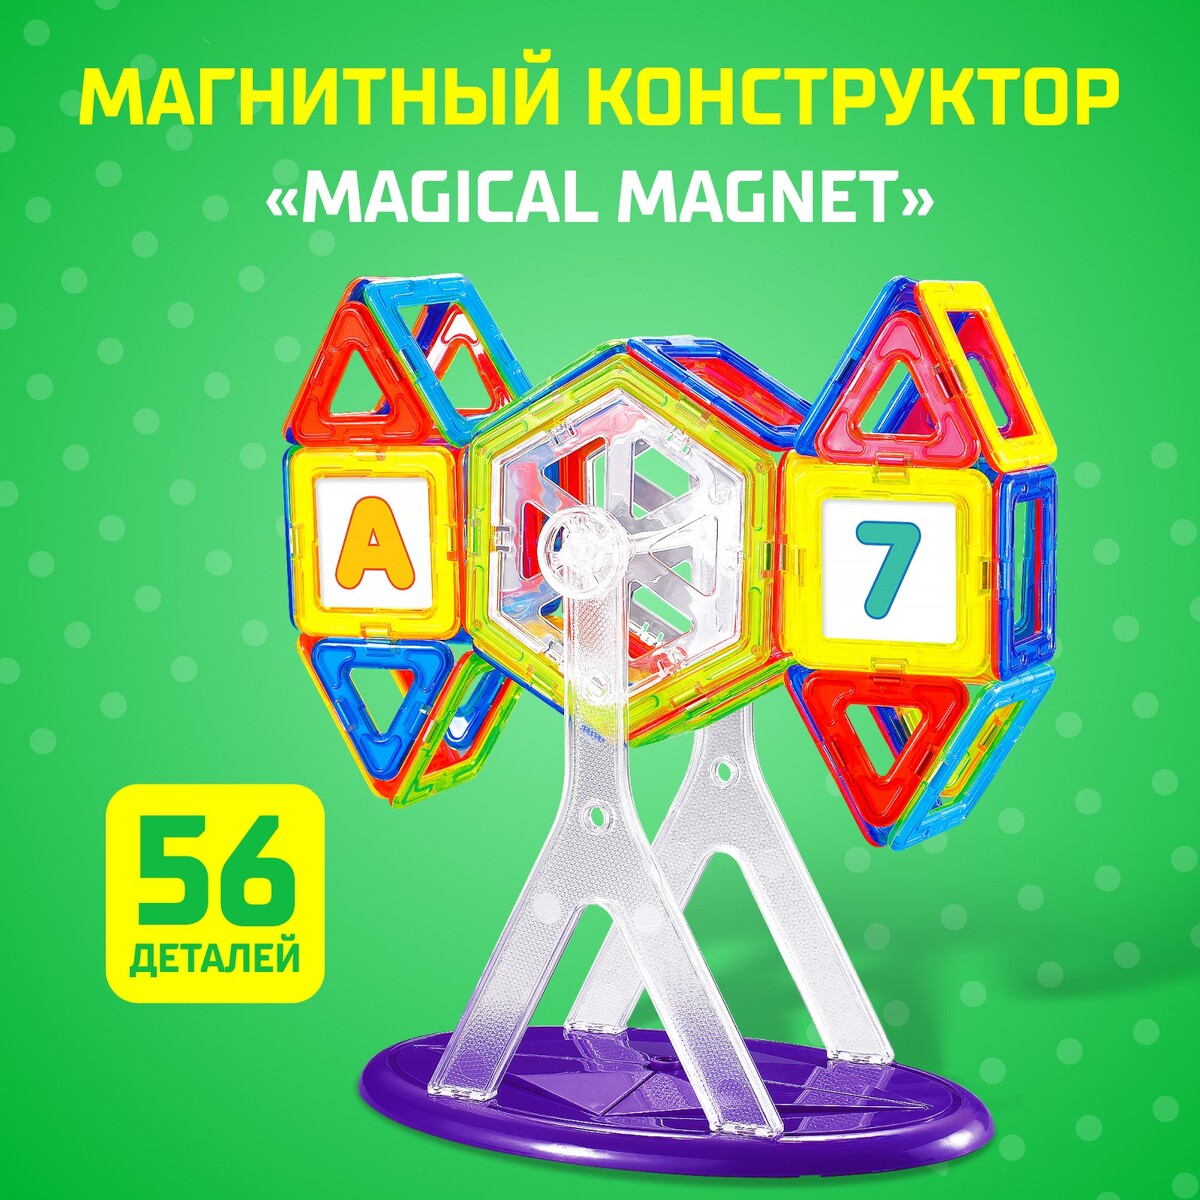 Магнитный конструктор magical magnet, 56 деталей, детали матовые магнитный конструктор magical magnet 22 детали детали матовые